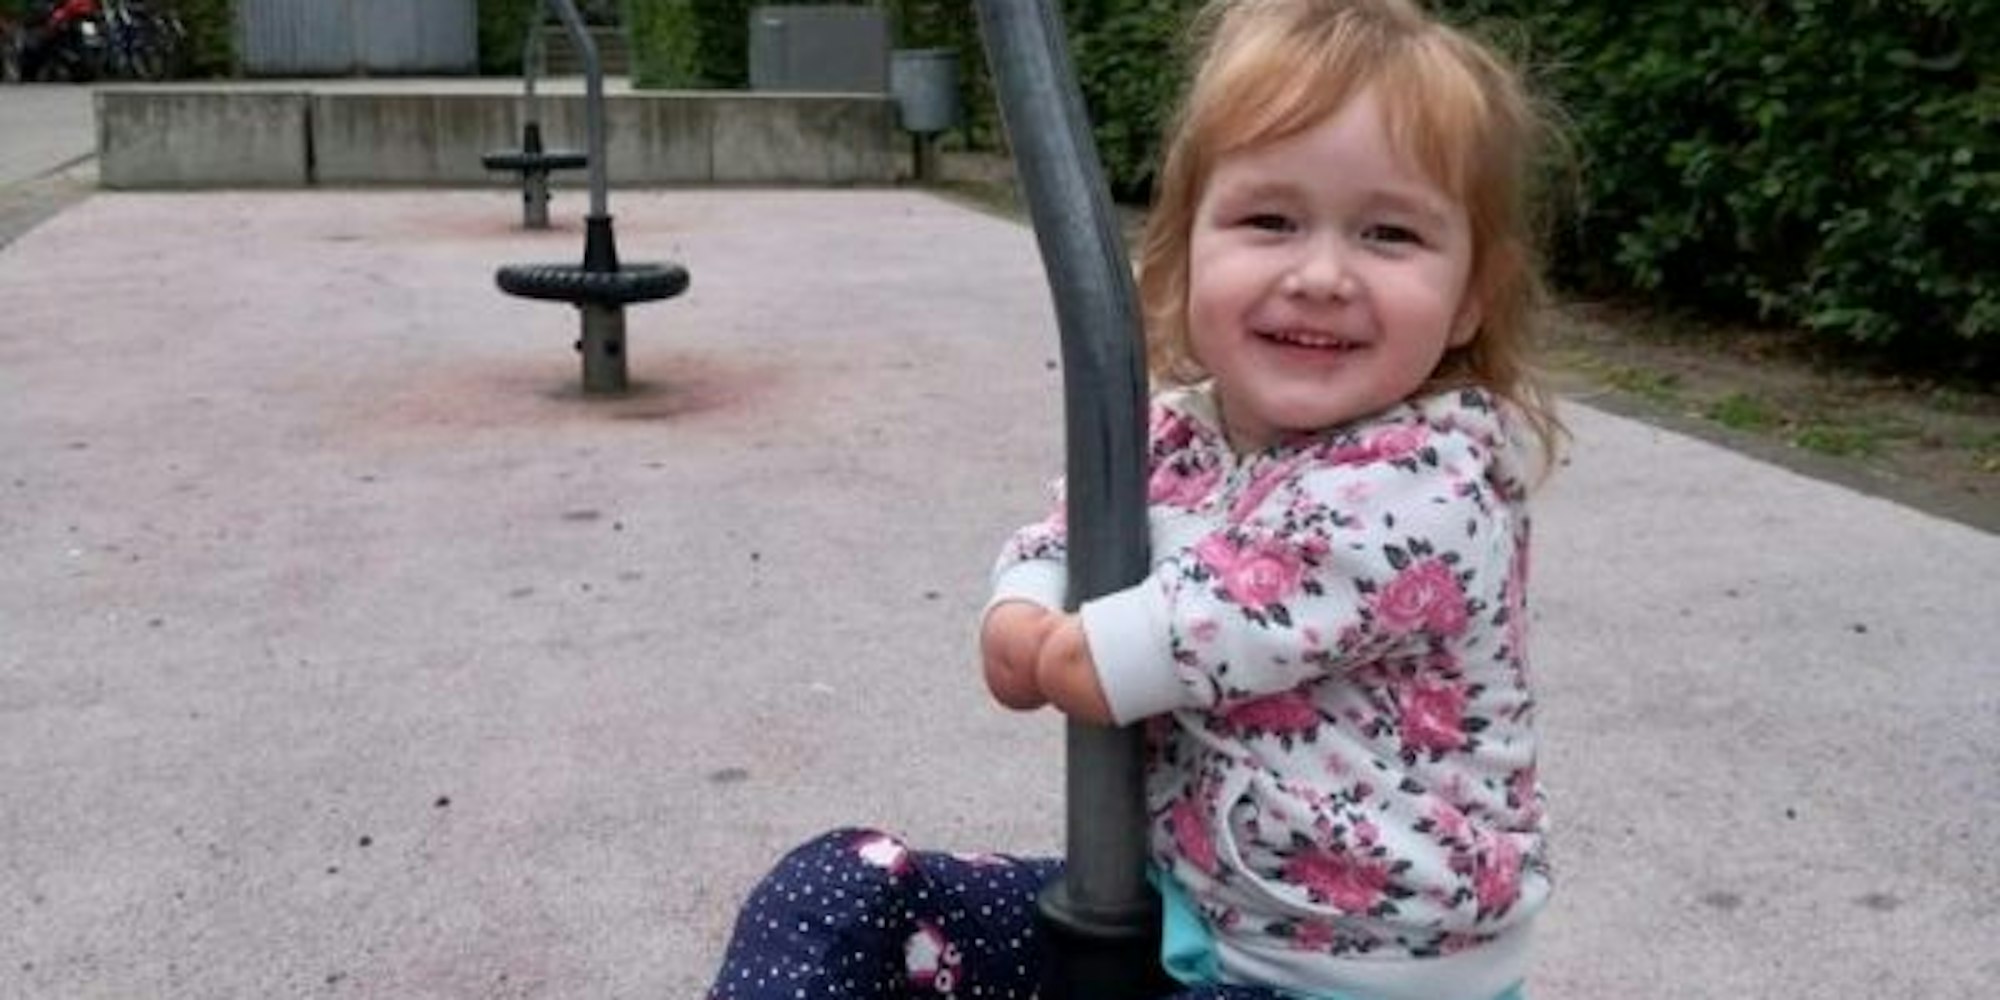 Die dreijährige Milana: Auf dem Spielplatz trägt sie ihre Beinprothesen.